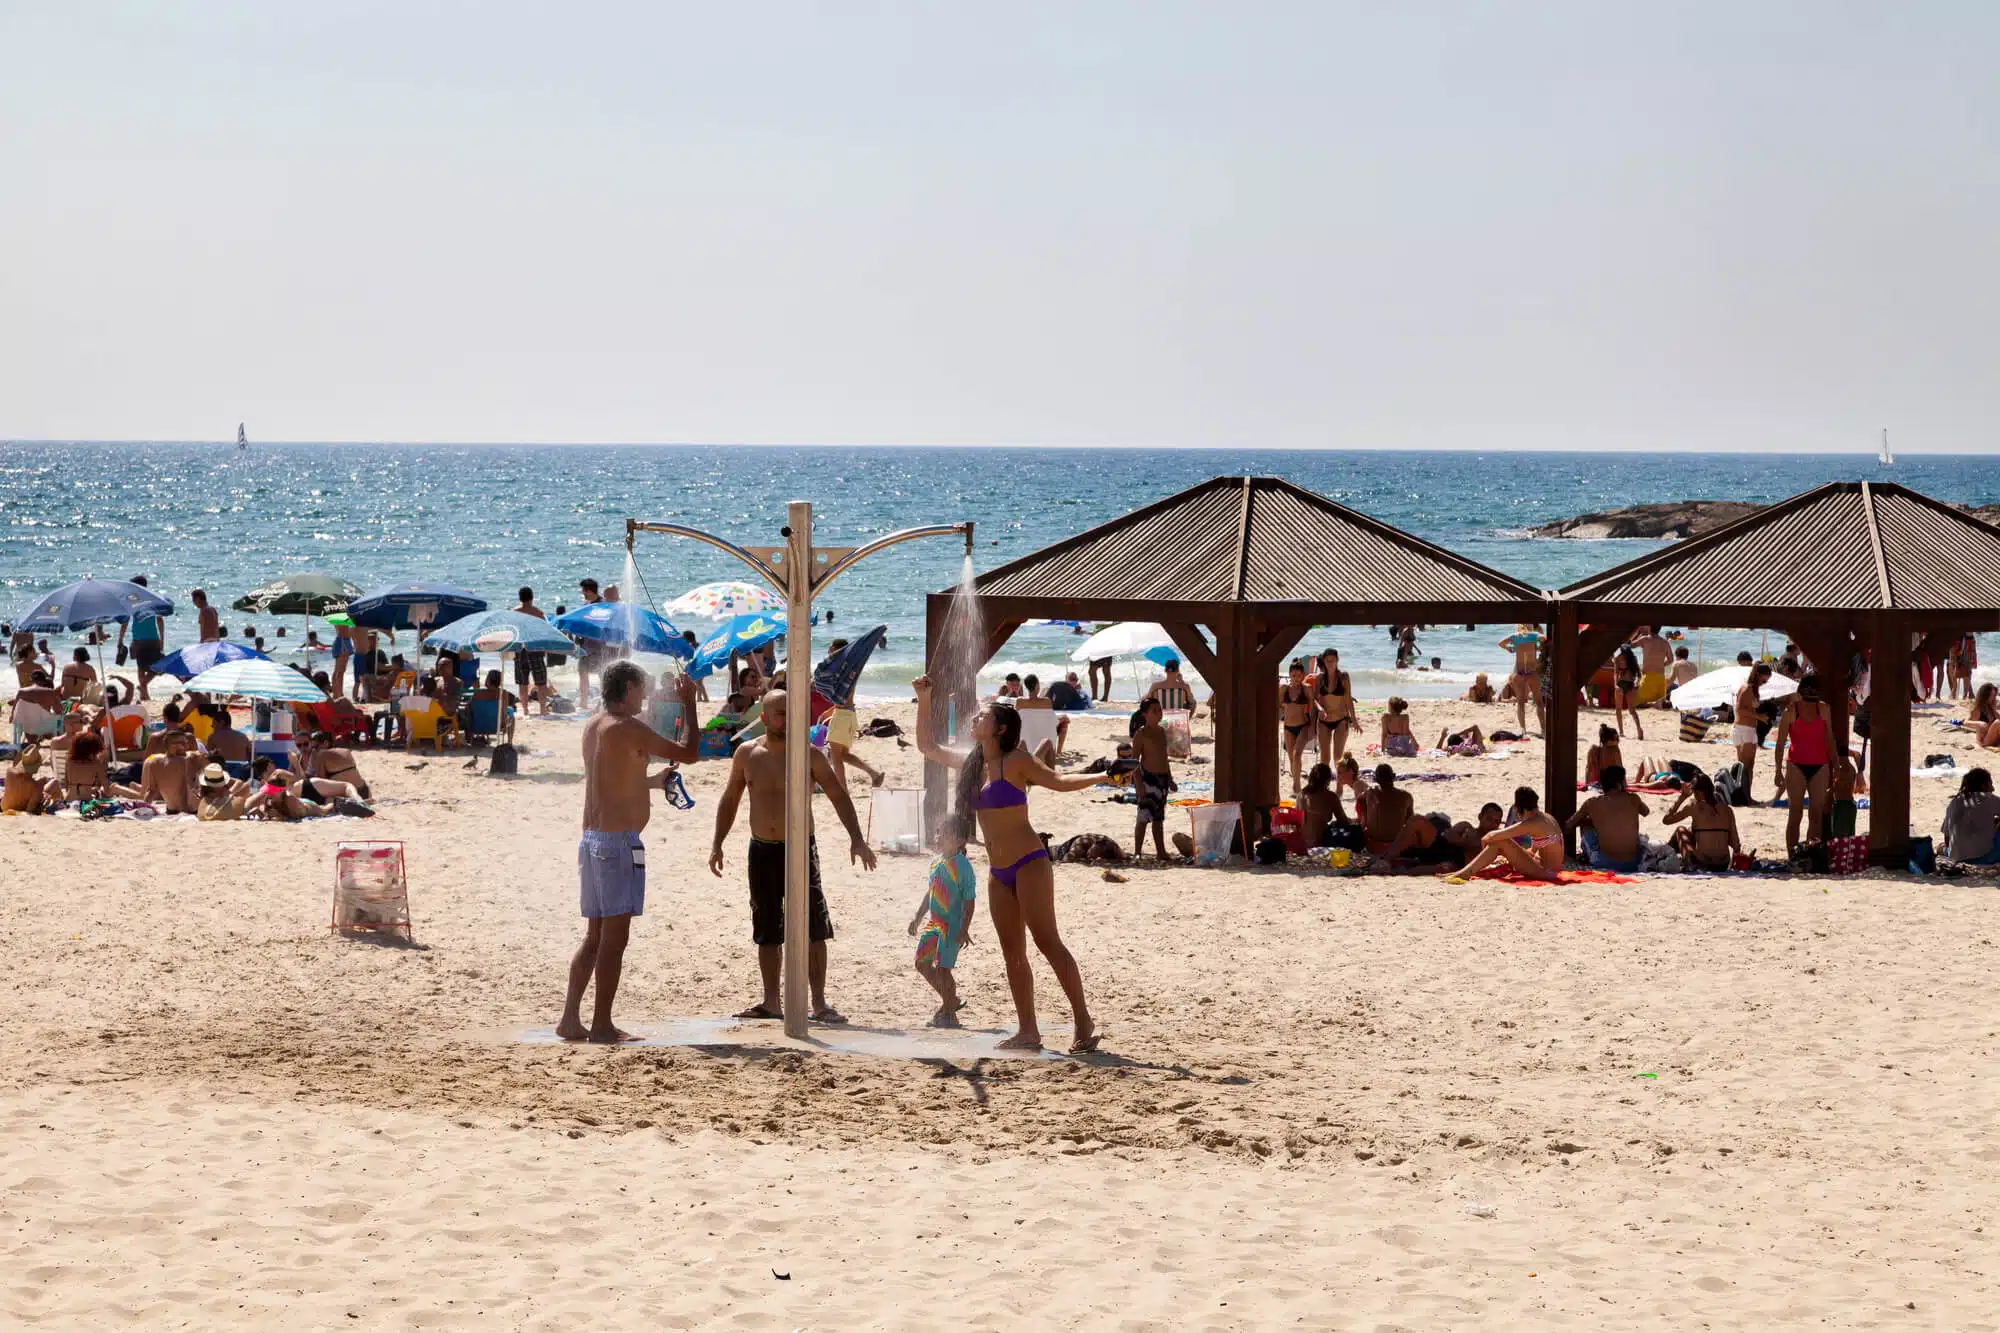 קיץ בחוף בתל אביב.  <a href="https://depositphotos.com. ">המחשה: depositphotos.com</a>